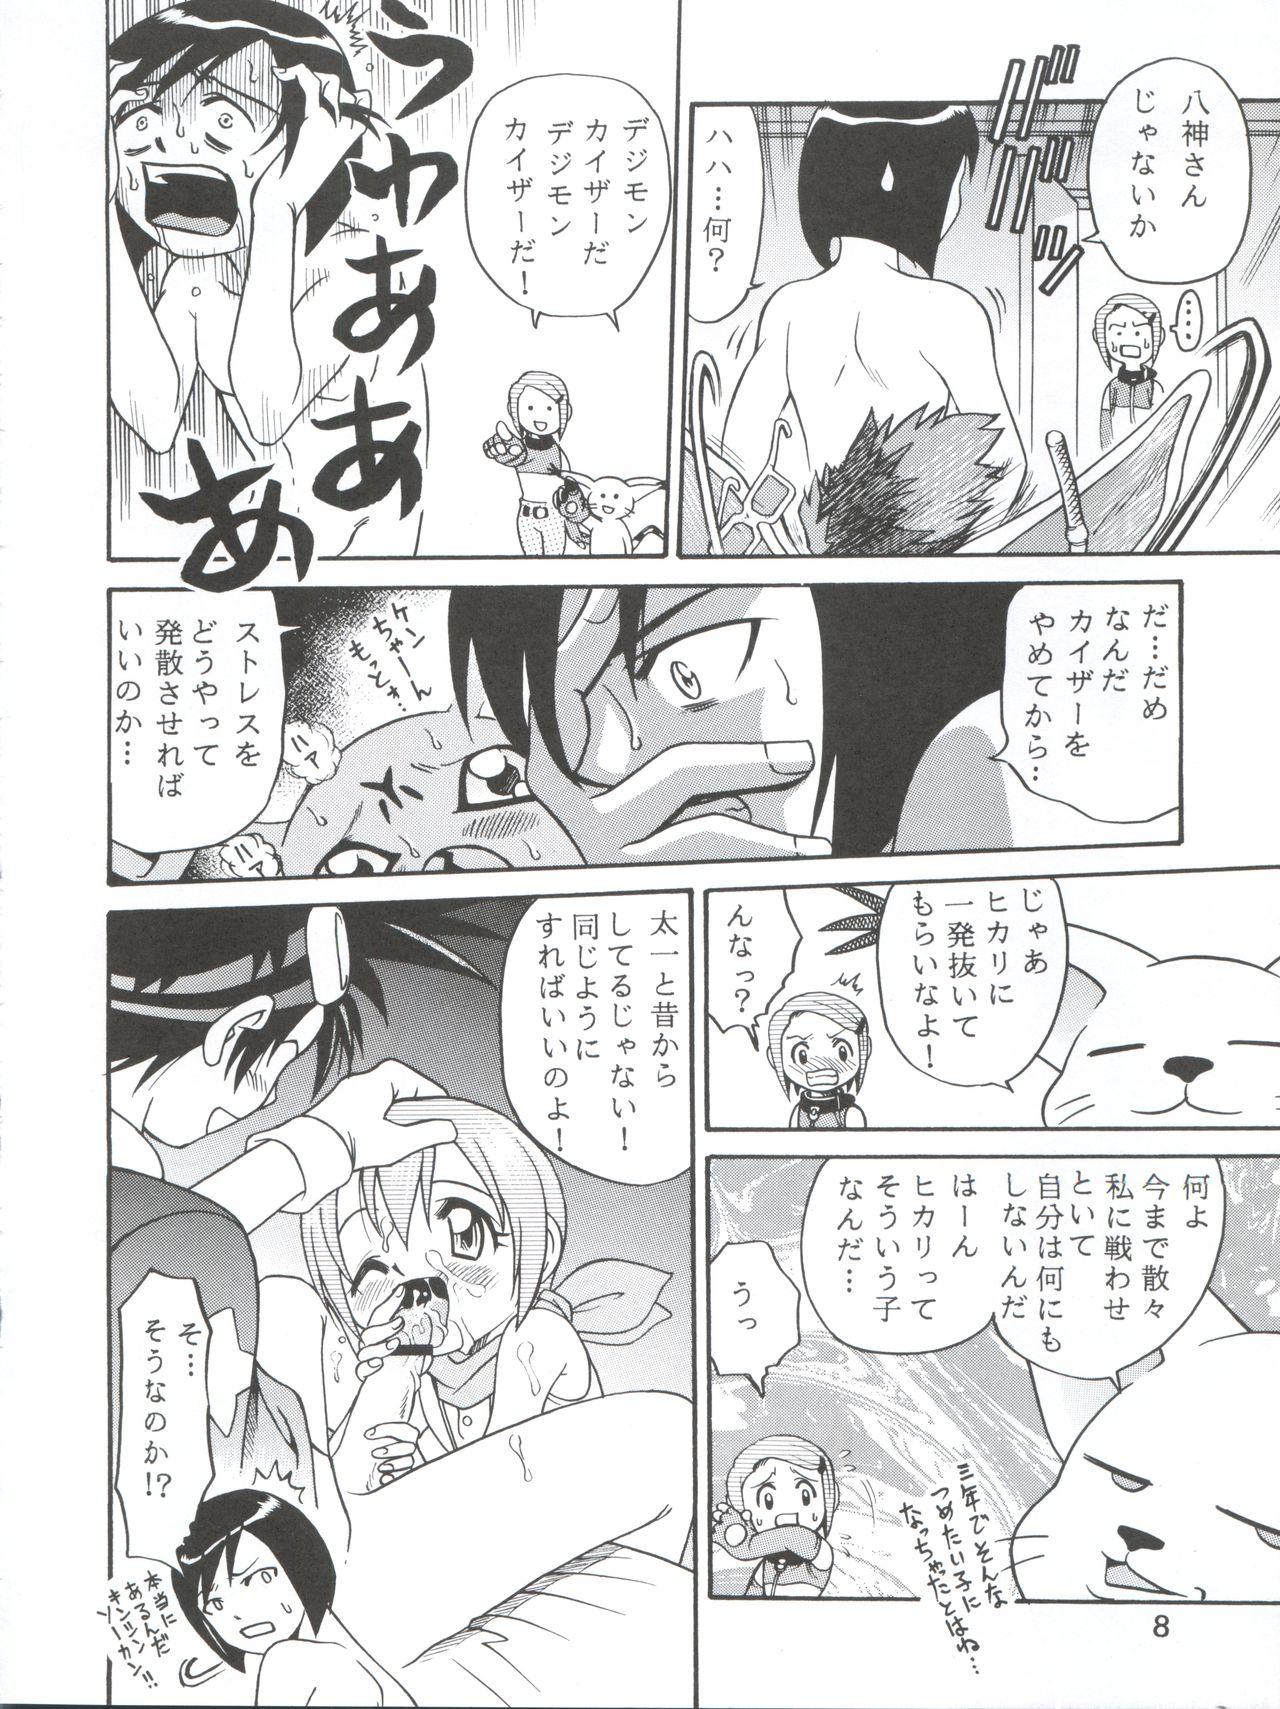 Two [Studio Tar (Kyouichirou, Shamon)] Yagami-san-chi no, Katei no Jijou. (Digimon Adventure 02) [2001-01-31] - Digimon adventure Banho - Page 8